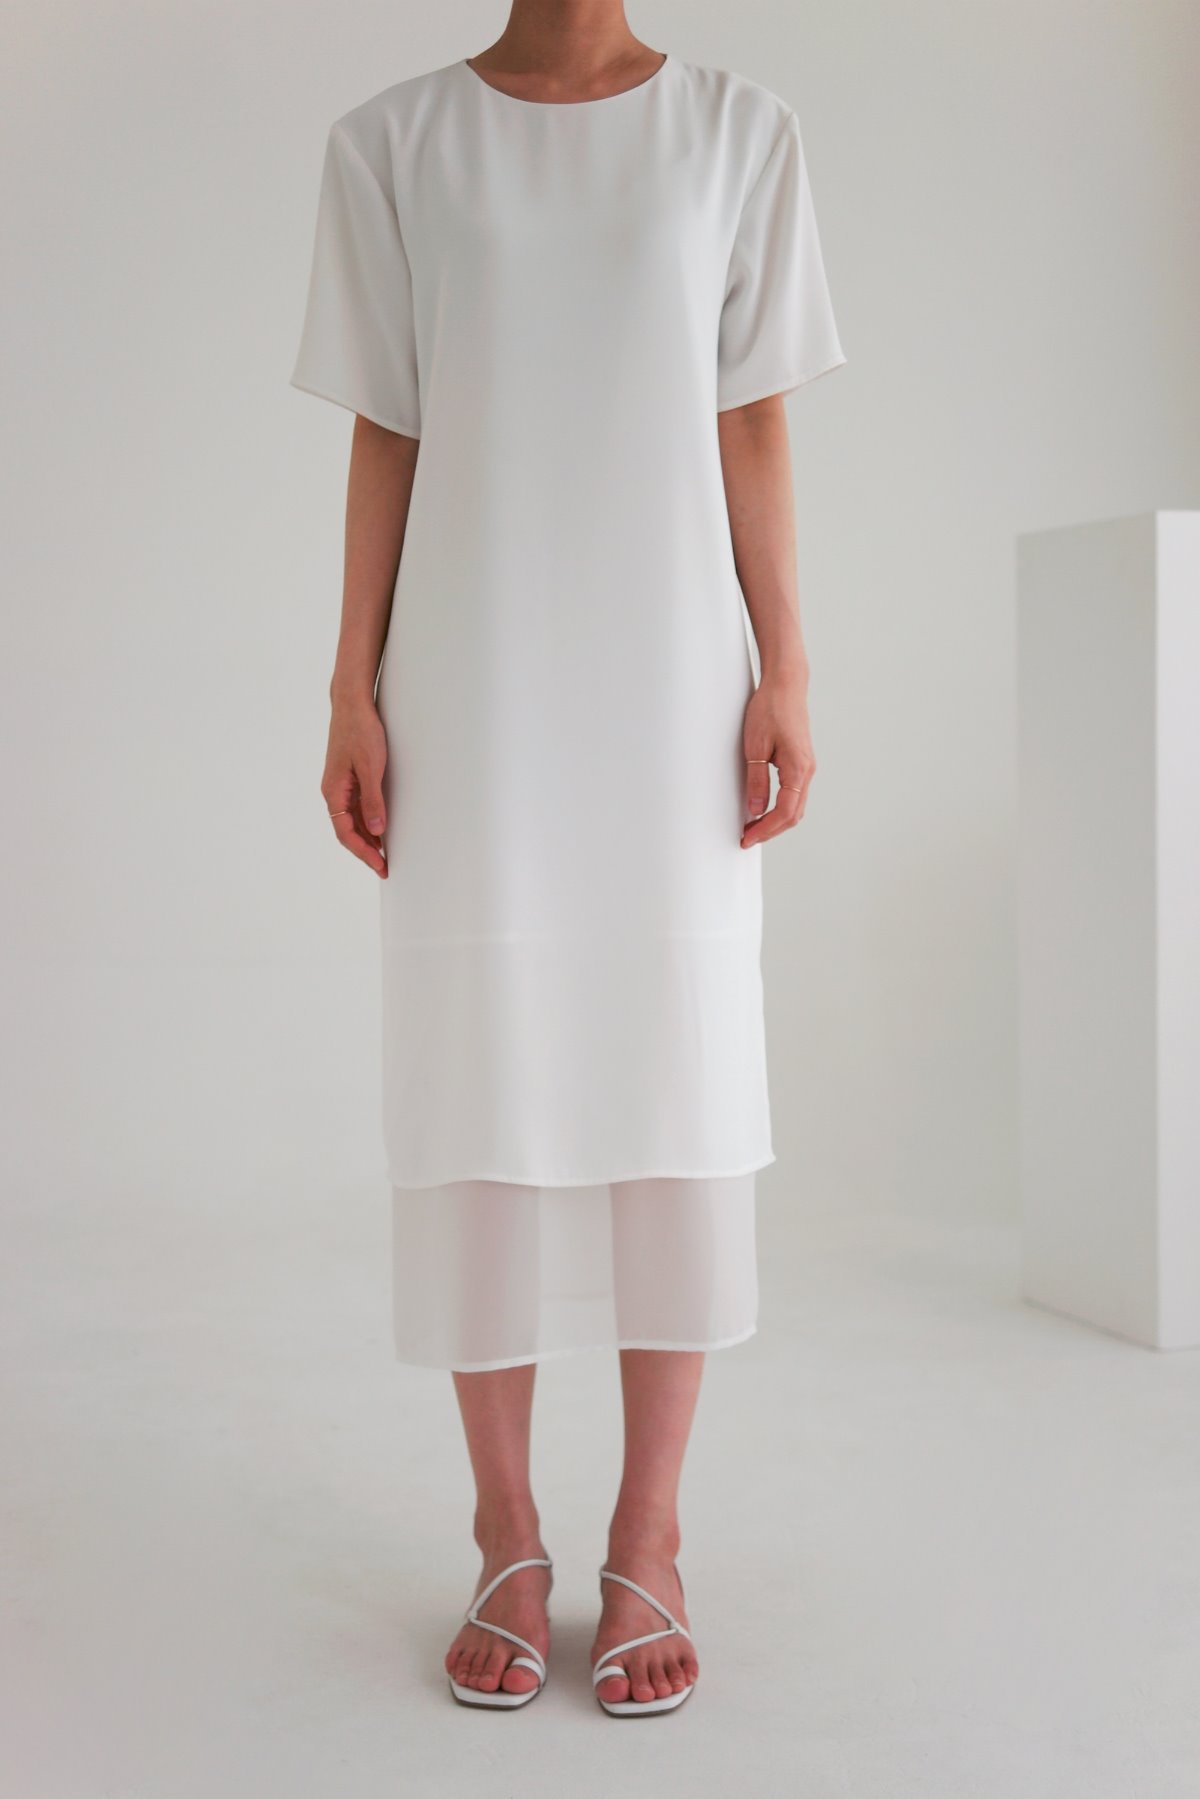 ANTHÈSE claro layered dress, white